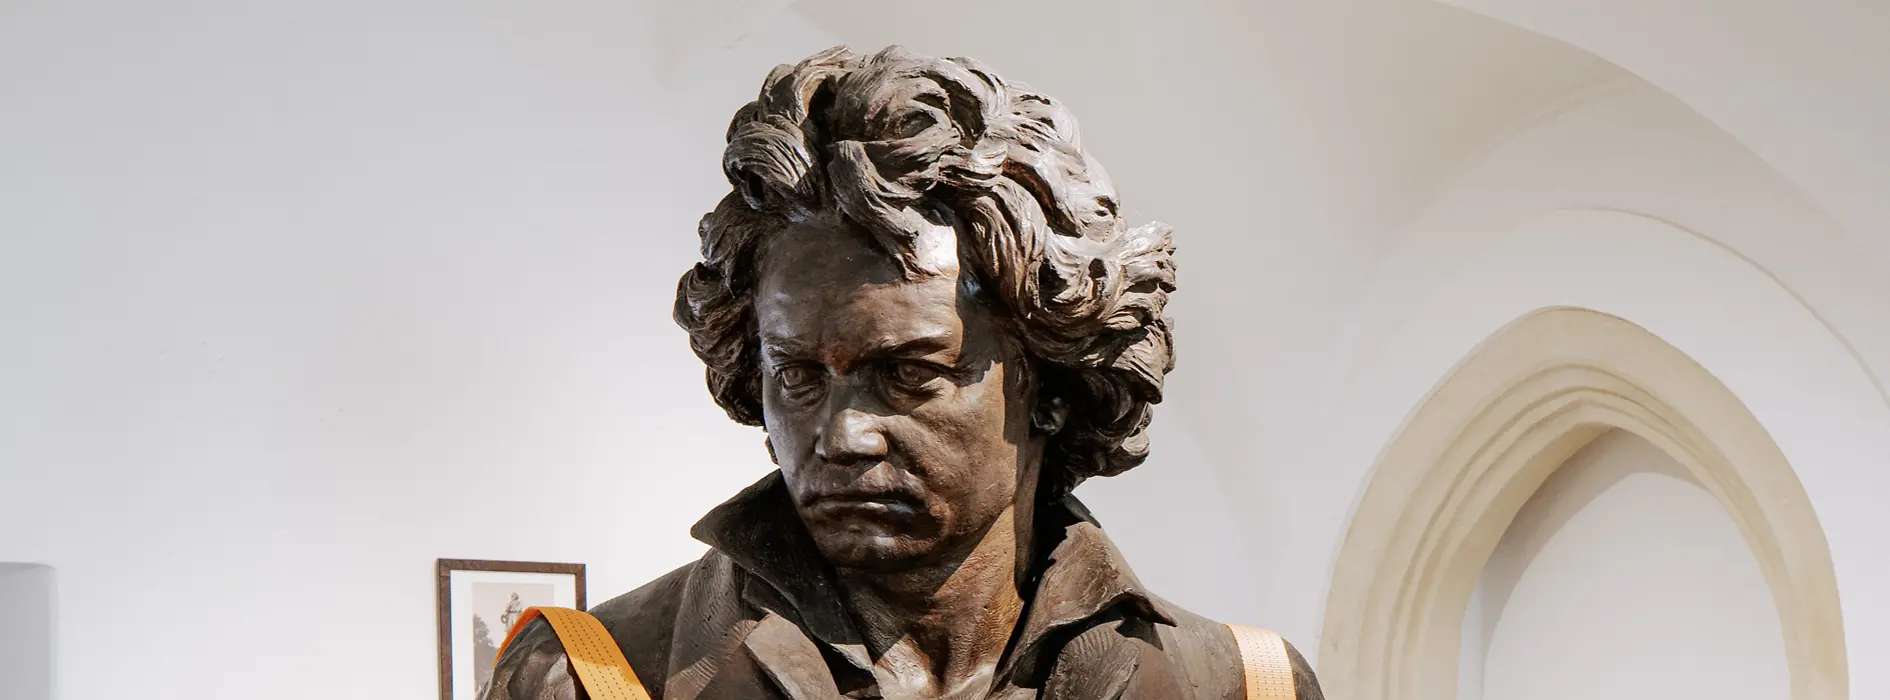 Musée Beethoven, intérieur, buste de Beethoven sur des palettes